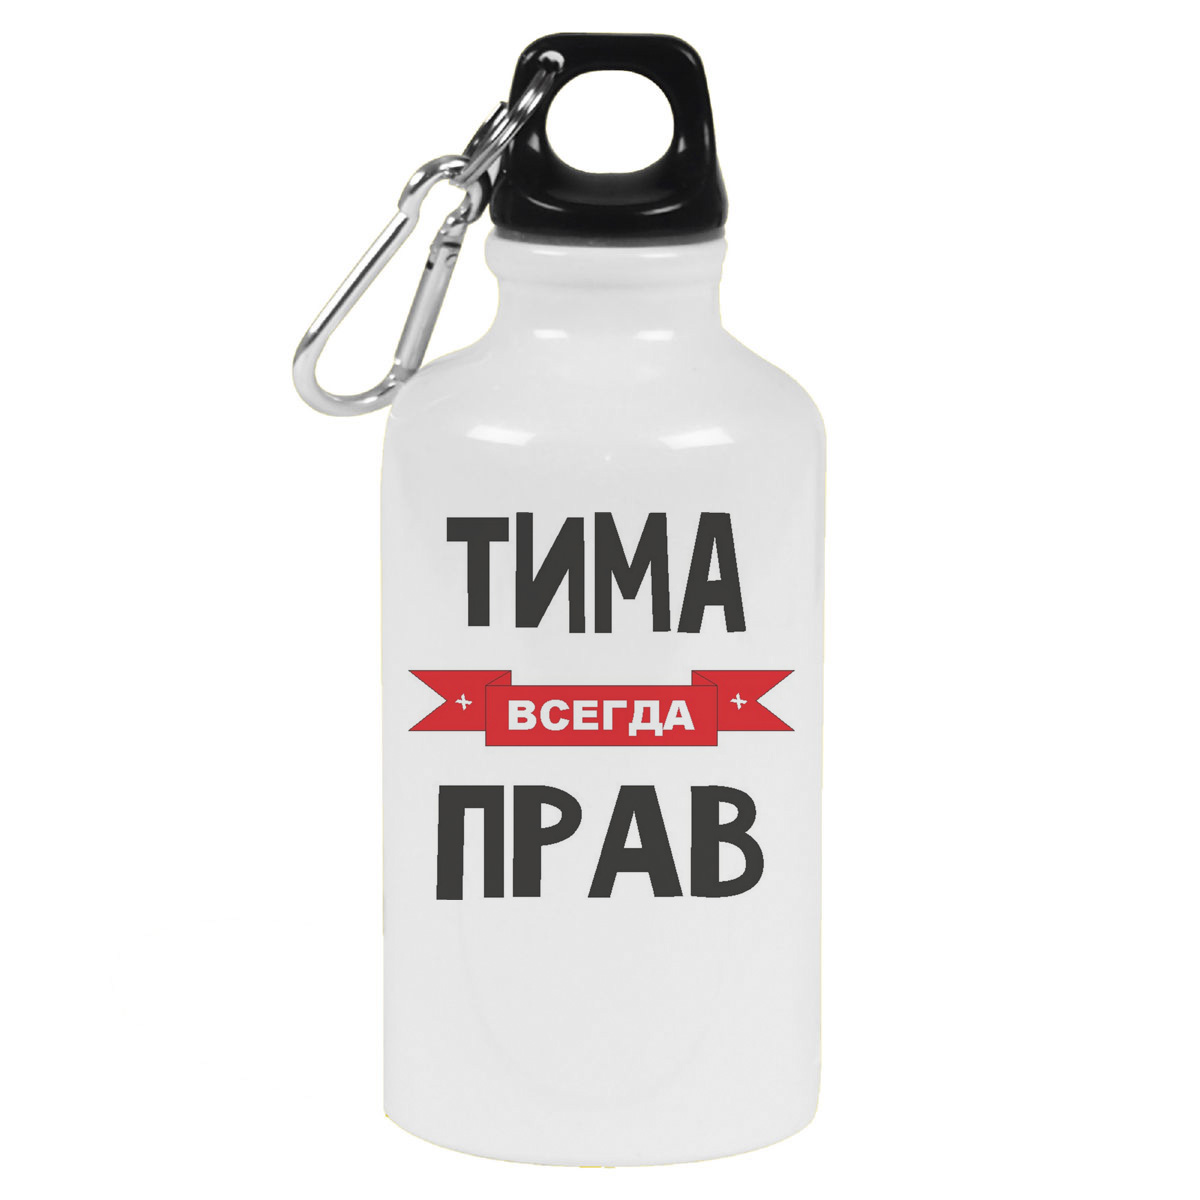 CoolPodarok Тима – спортивная бутылка, где всегда прав.